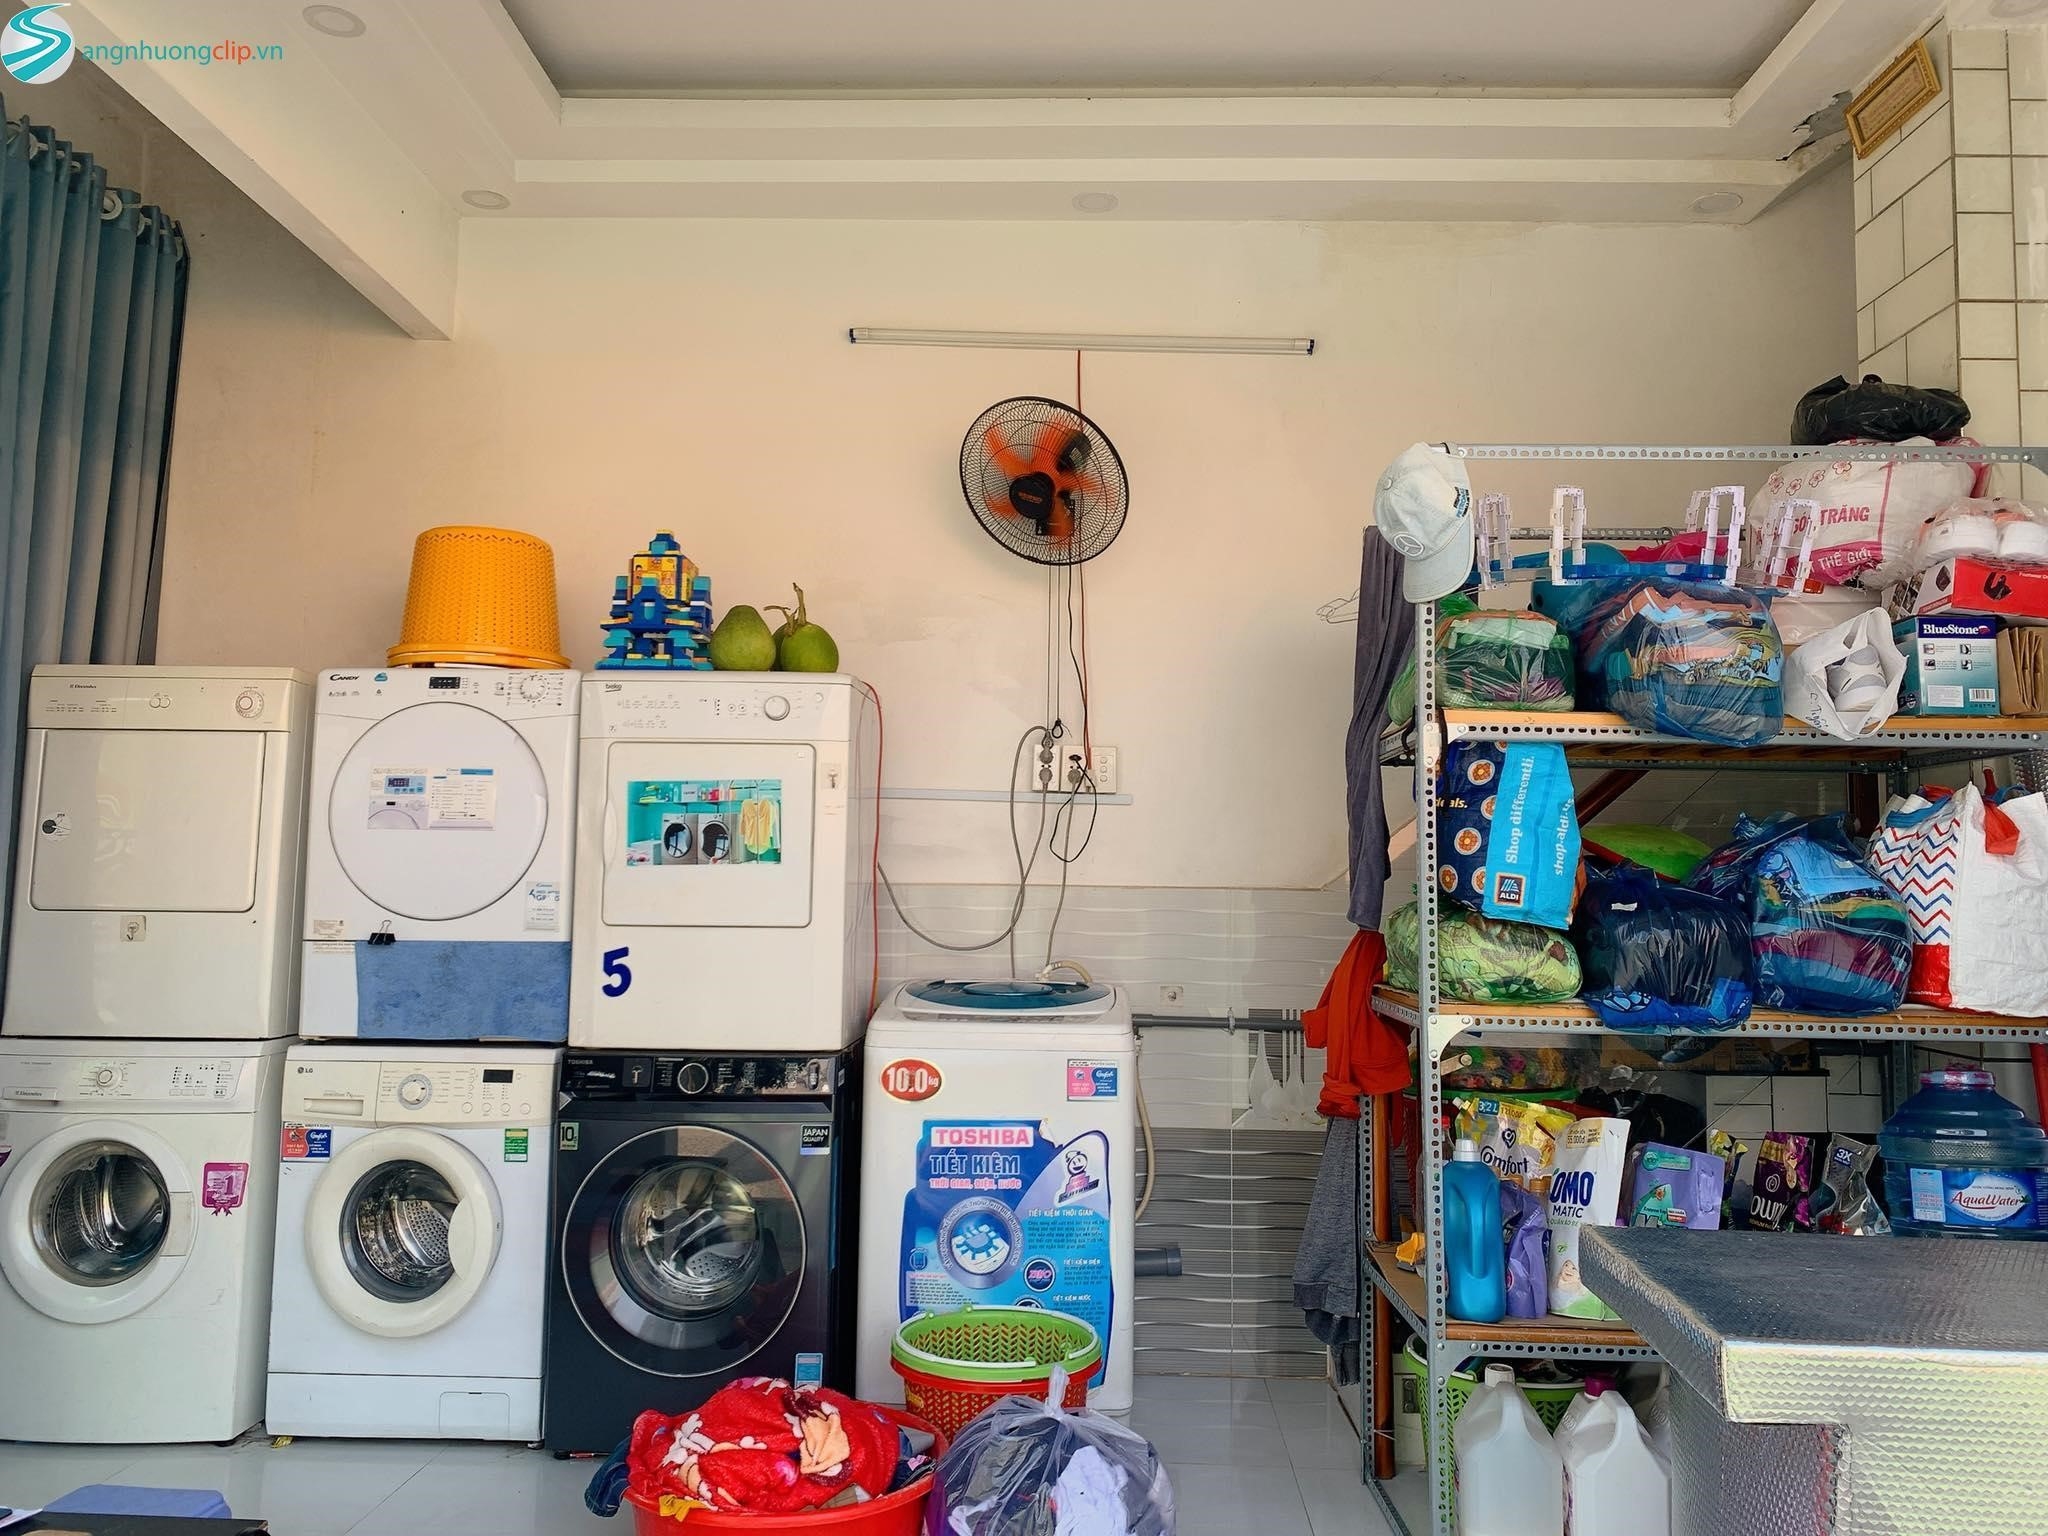 Dịch vụ giặt ủi Quận 2: Giao nhận 2 chiều và chất lượng